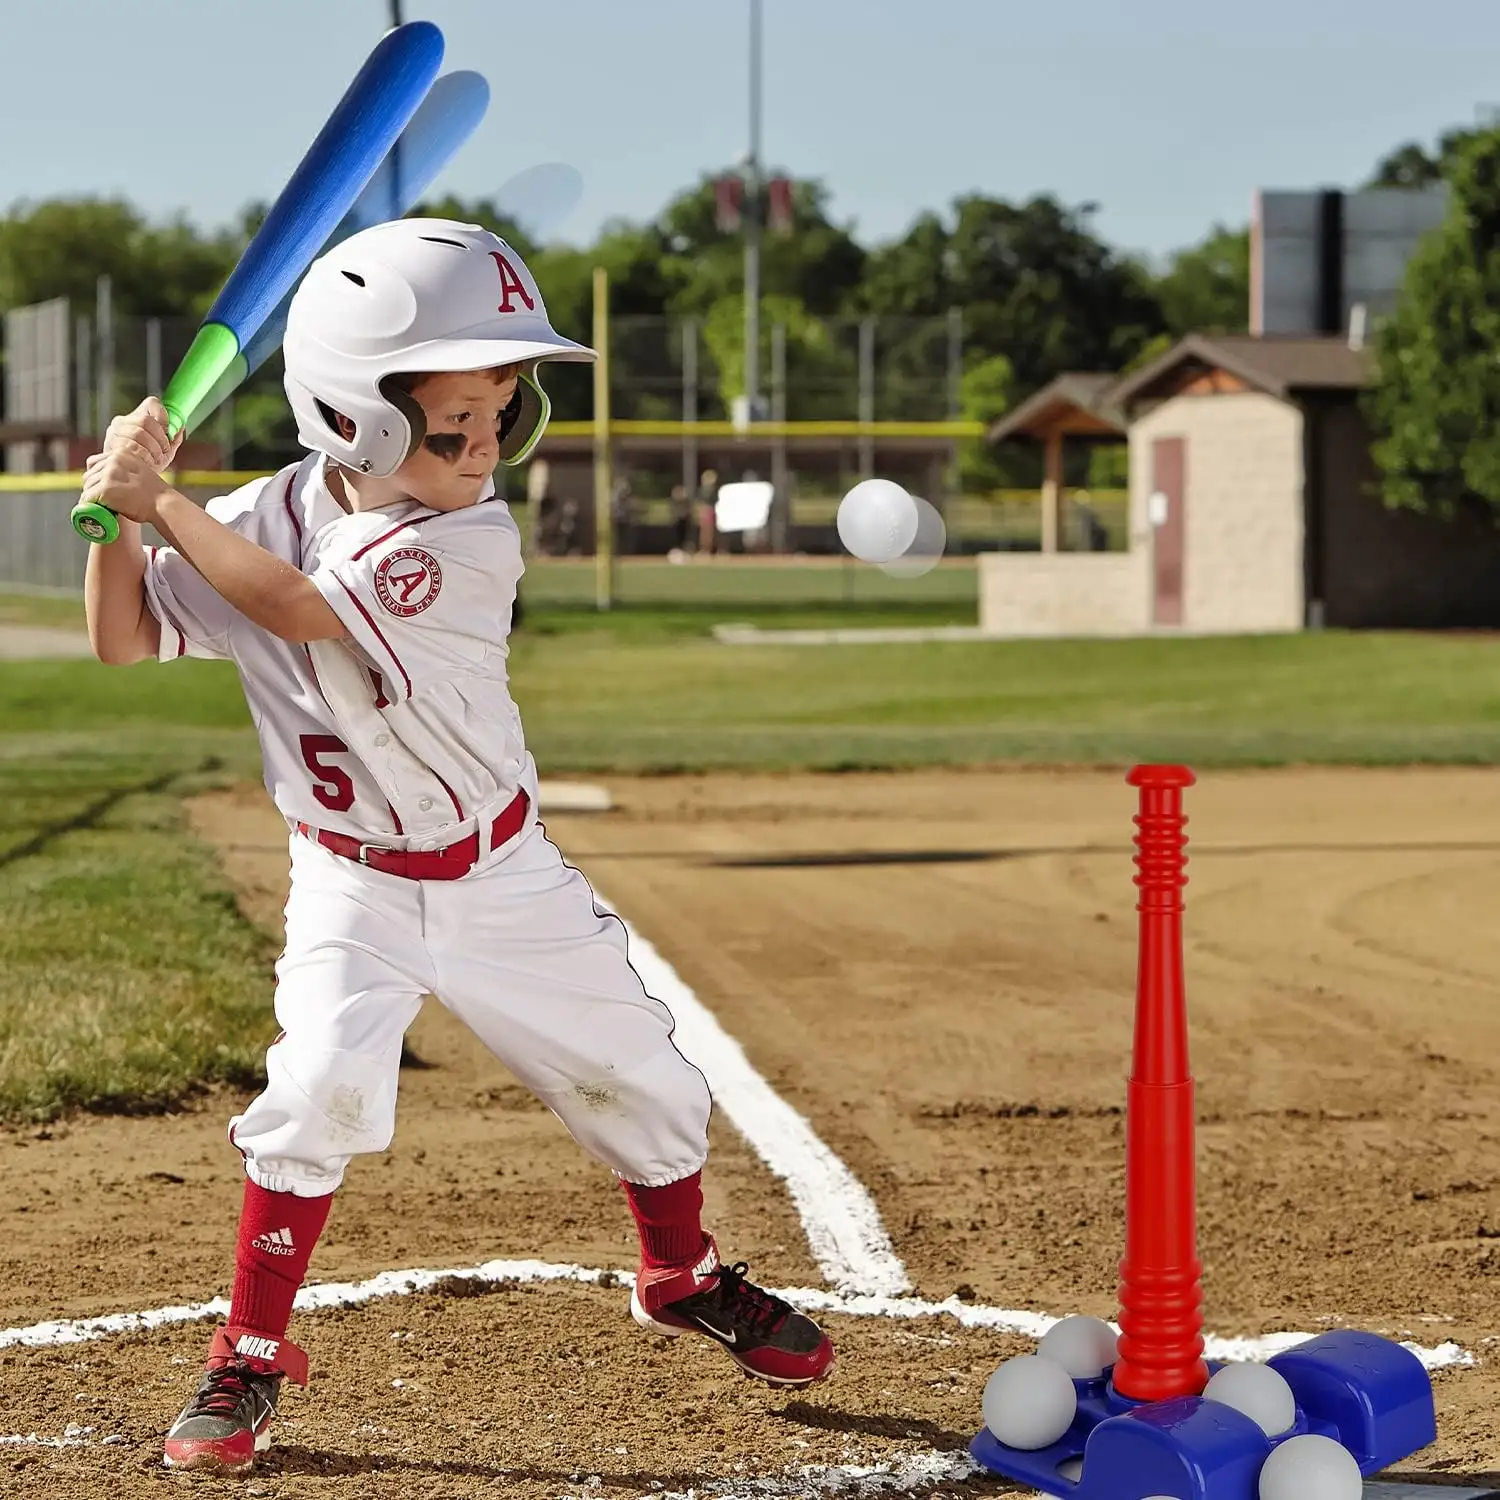 Anak-anak lembut Pu bola busa Catapult bisbol Set otomatis peluncur bisbol kelelawar mainan untuk anak-anak